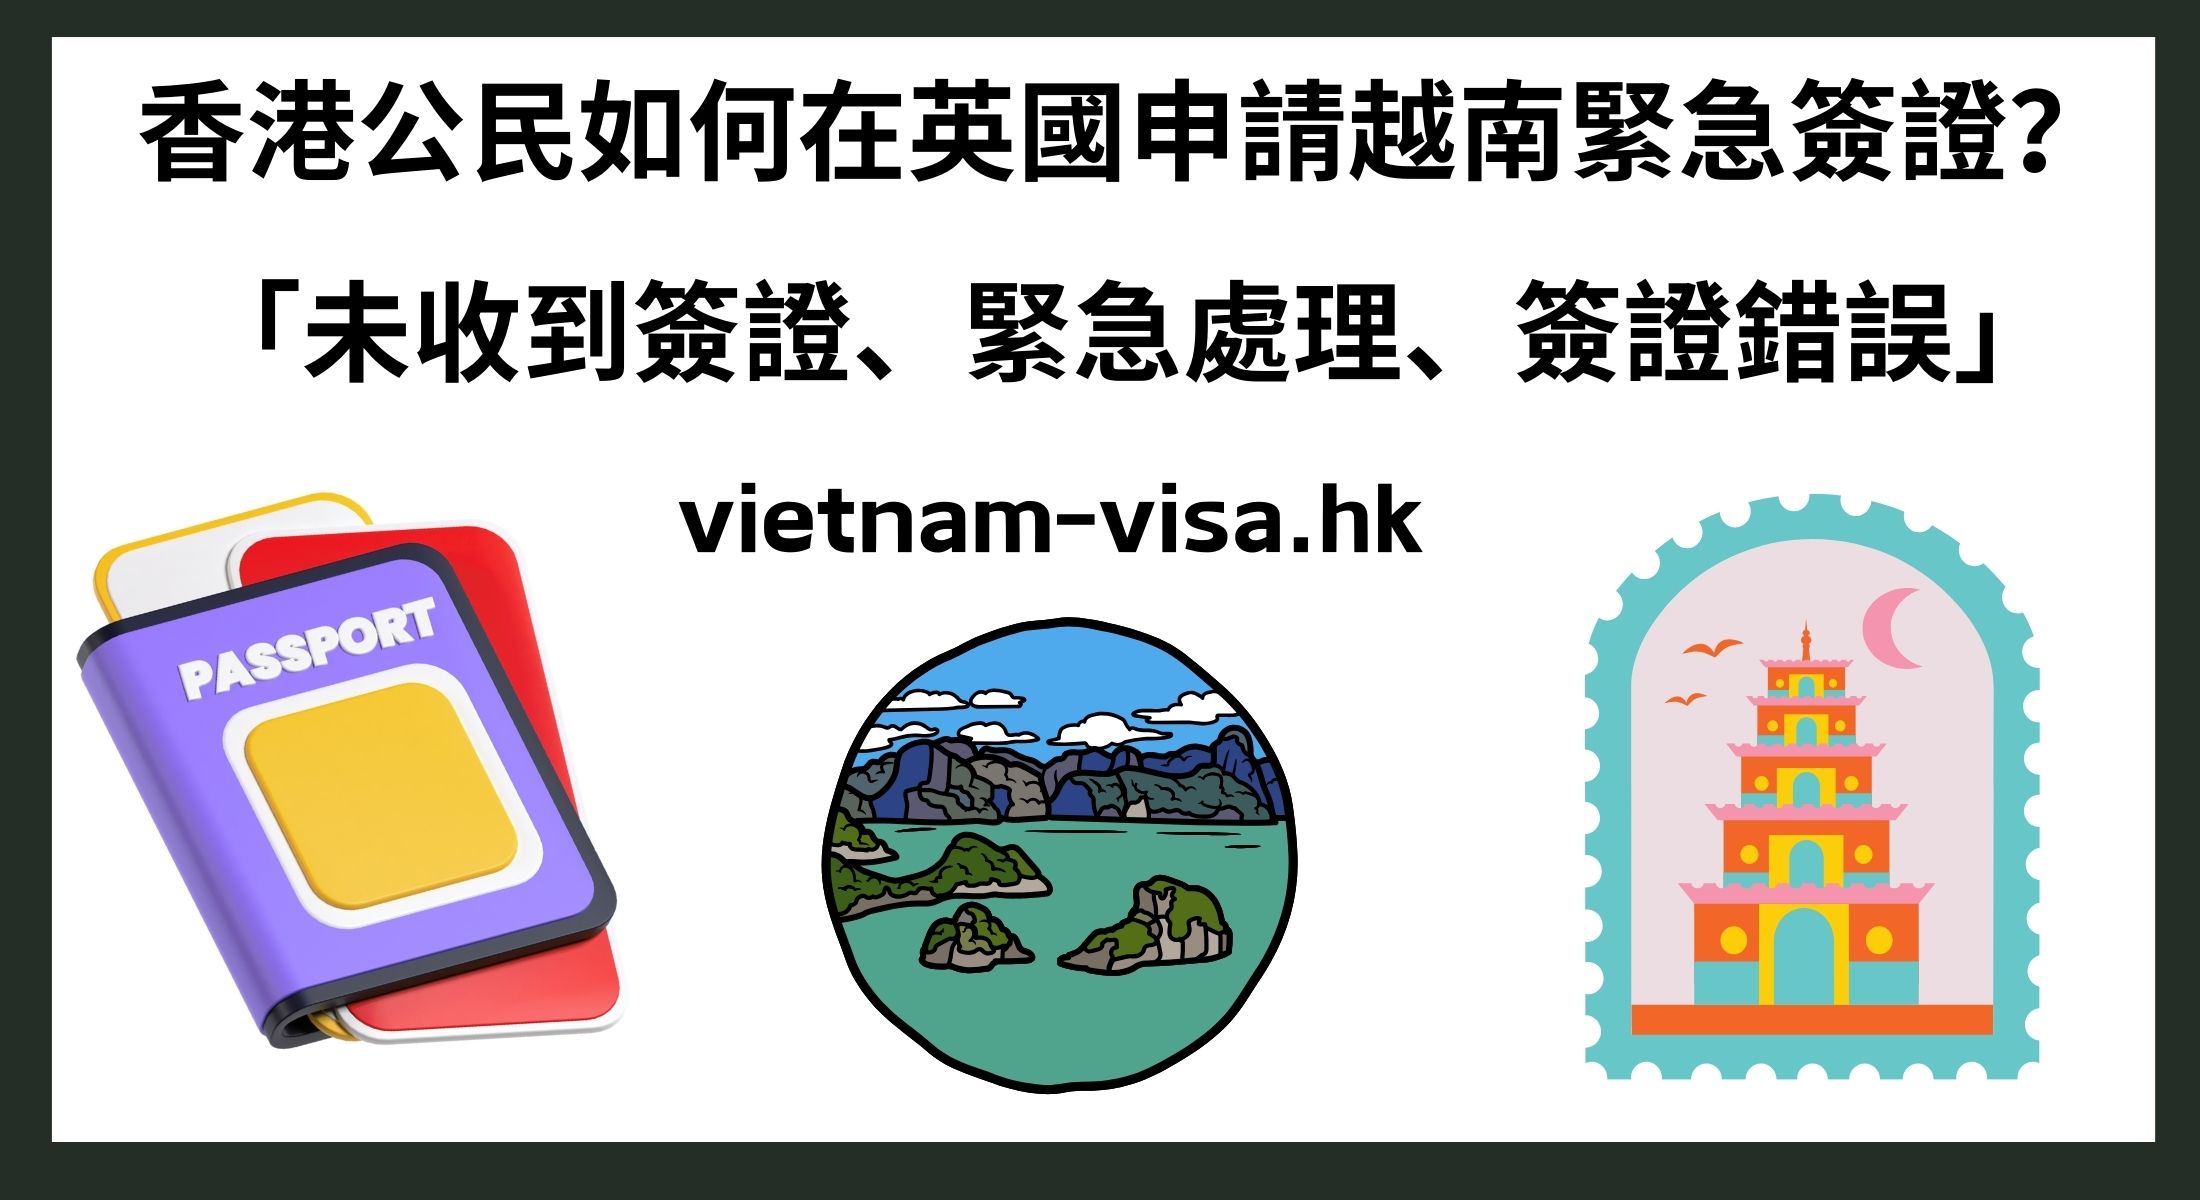 香港公民如何在英國申請越南緊急簽證？ 「未收到簽證、緊急處理、簽證錯誤」